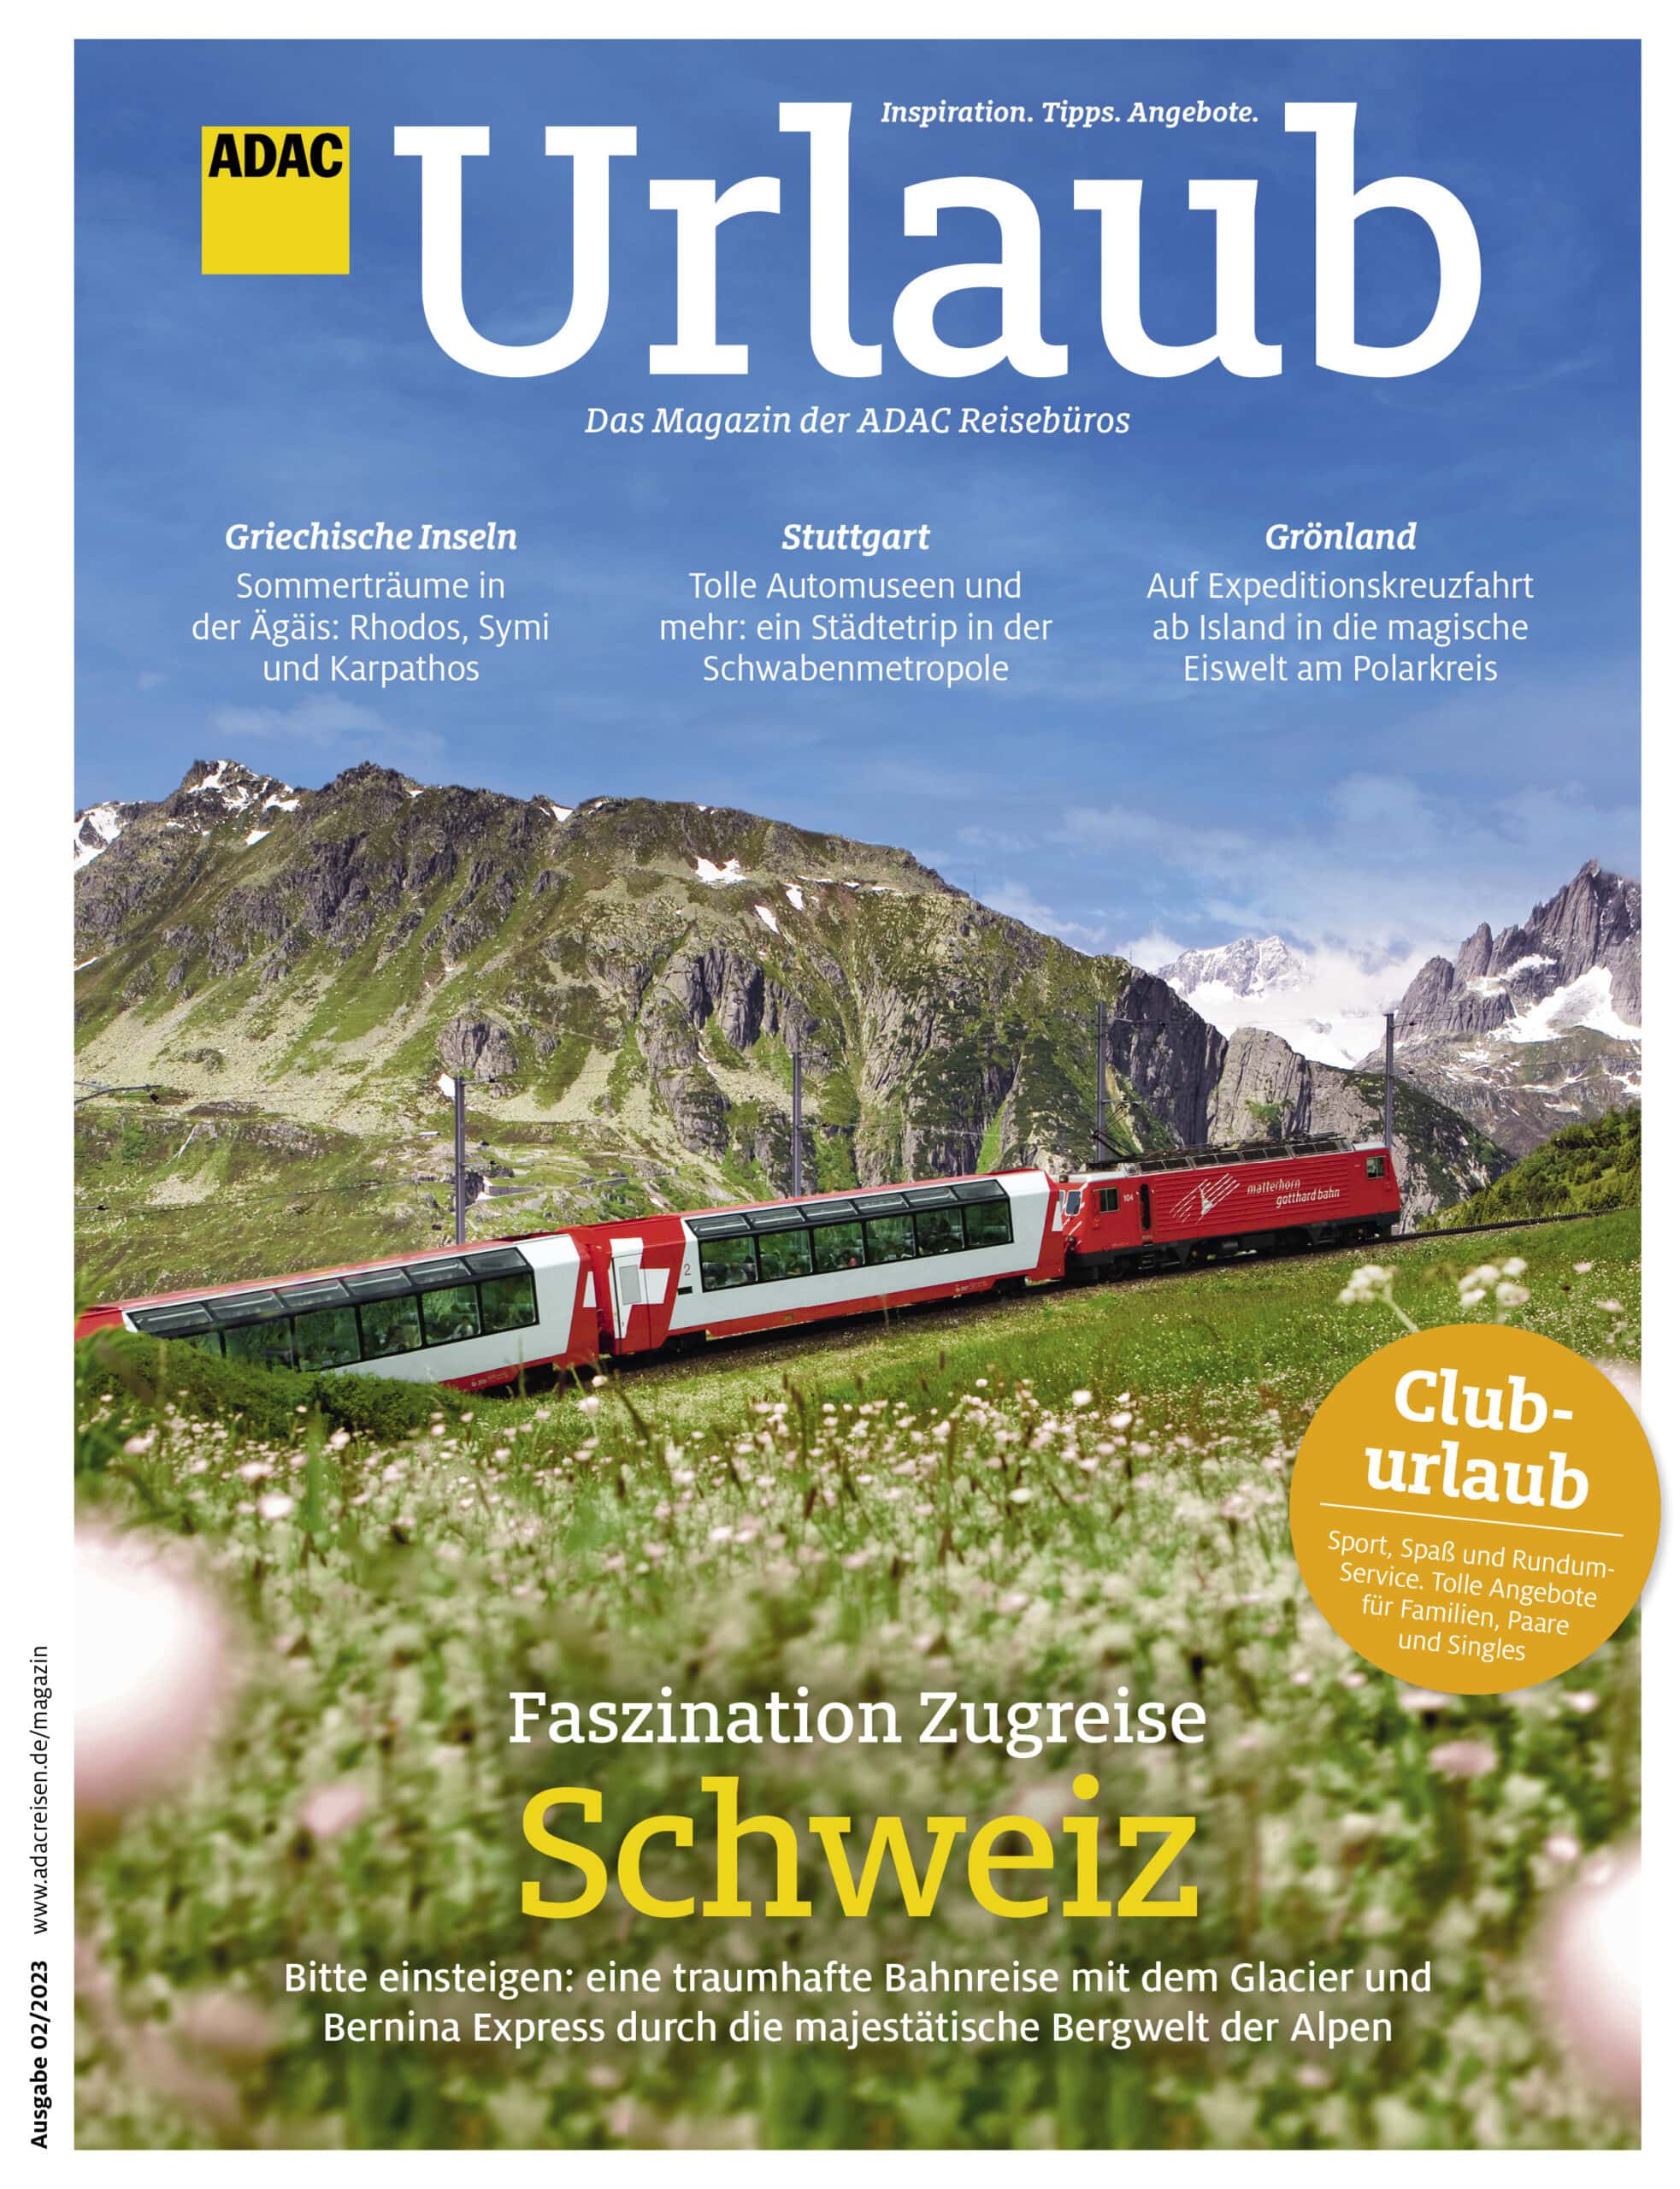 Zugreise Schweiz